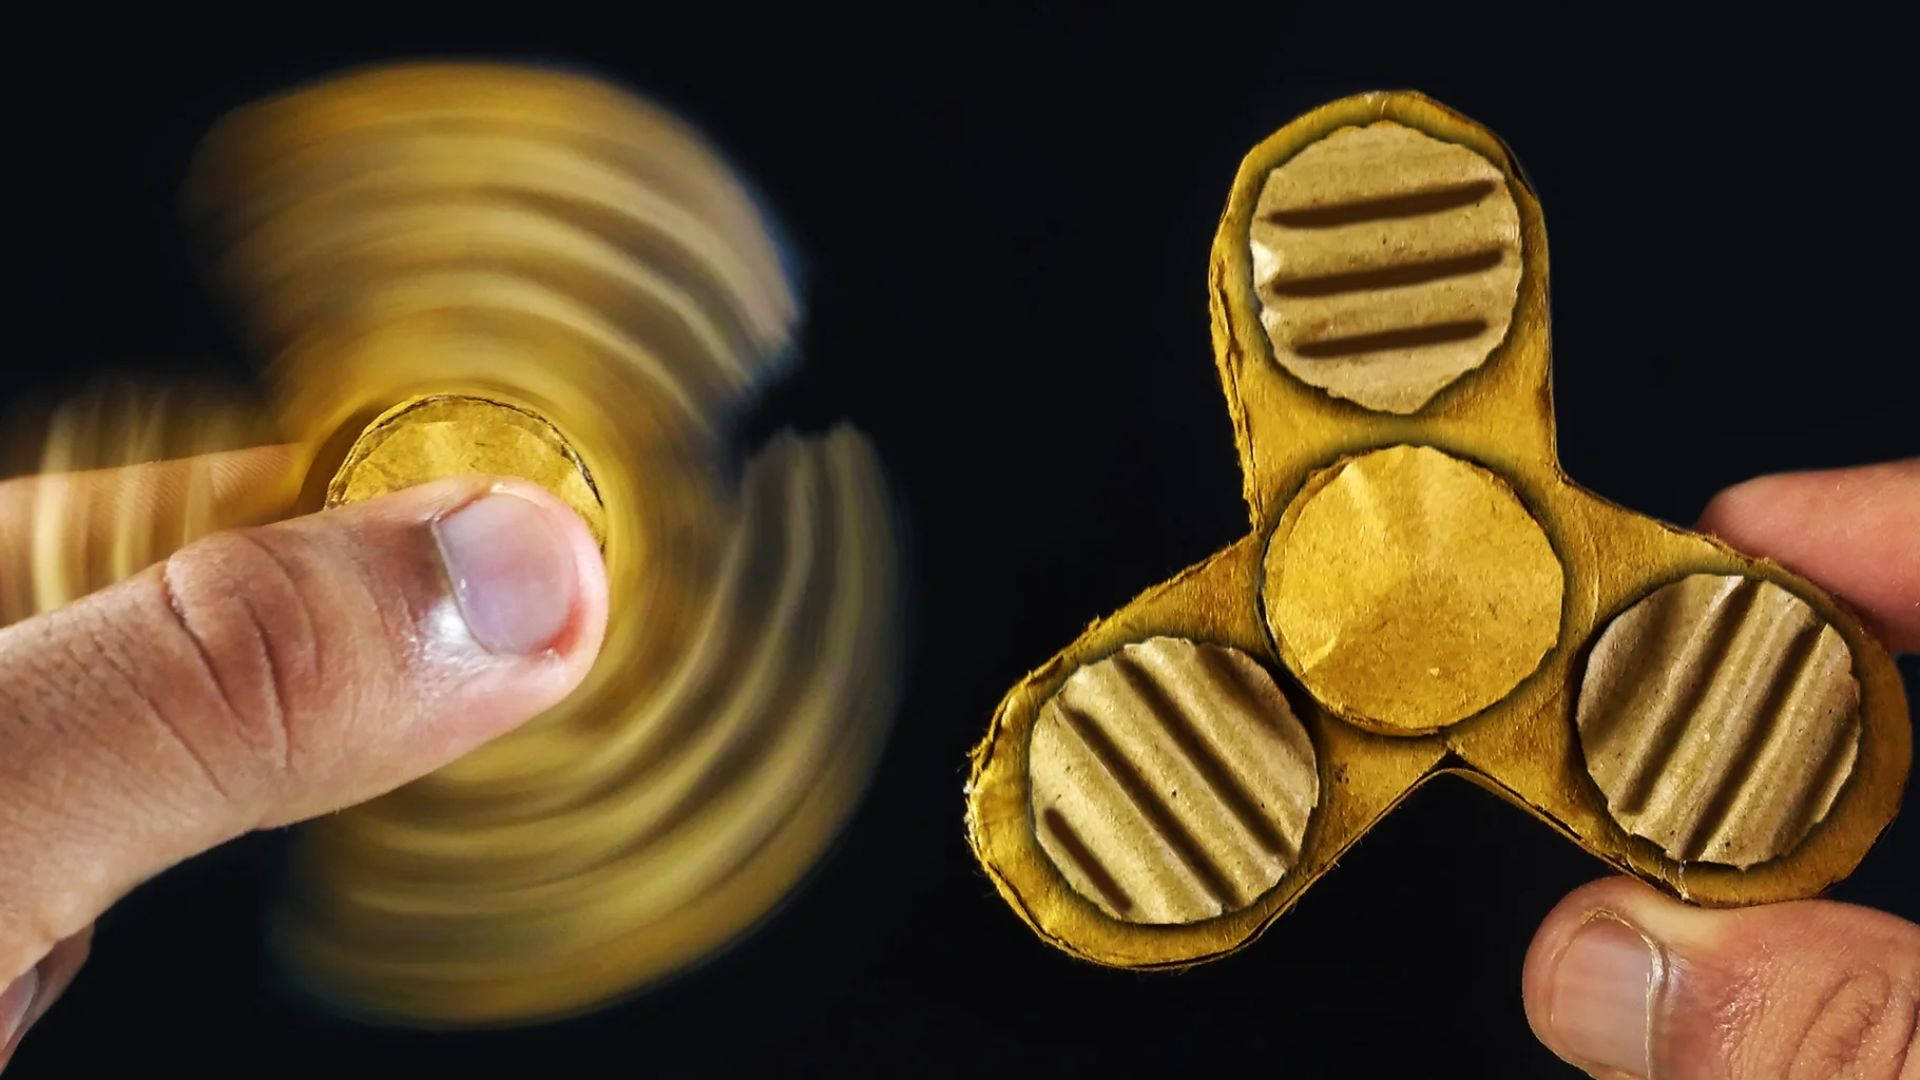 Exquisite Golden Fidget Spinner in Action Wallpaper